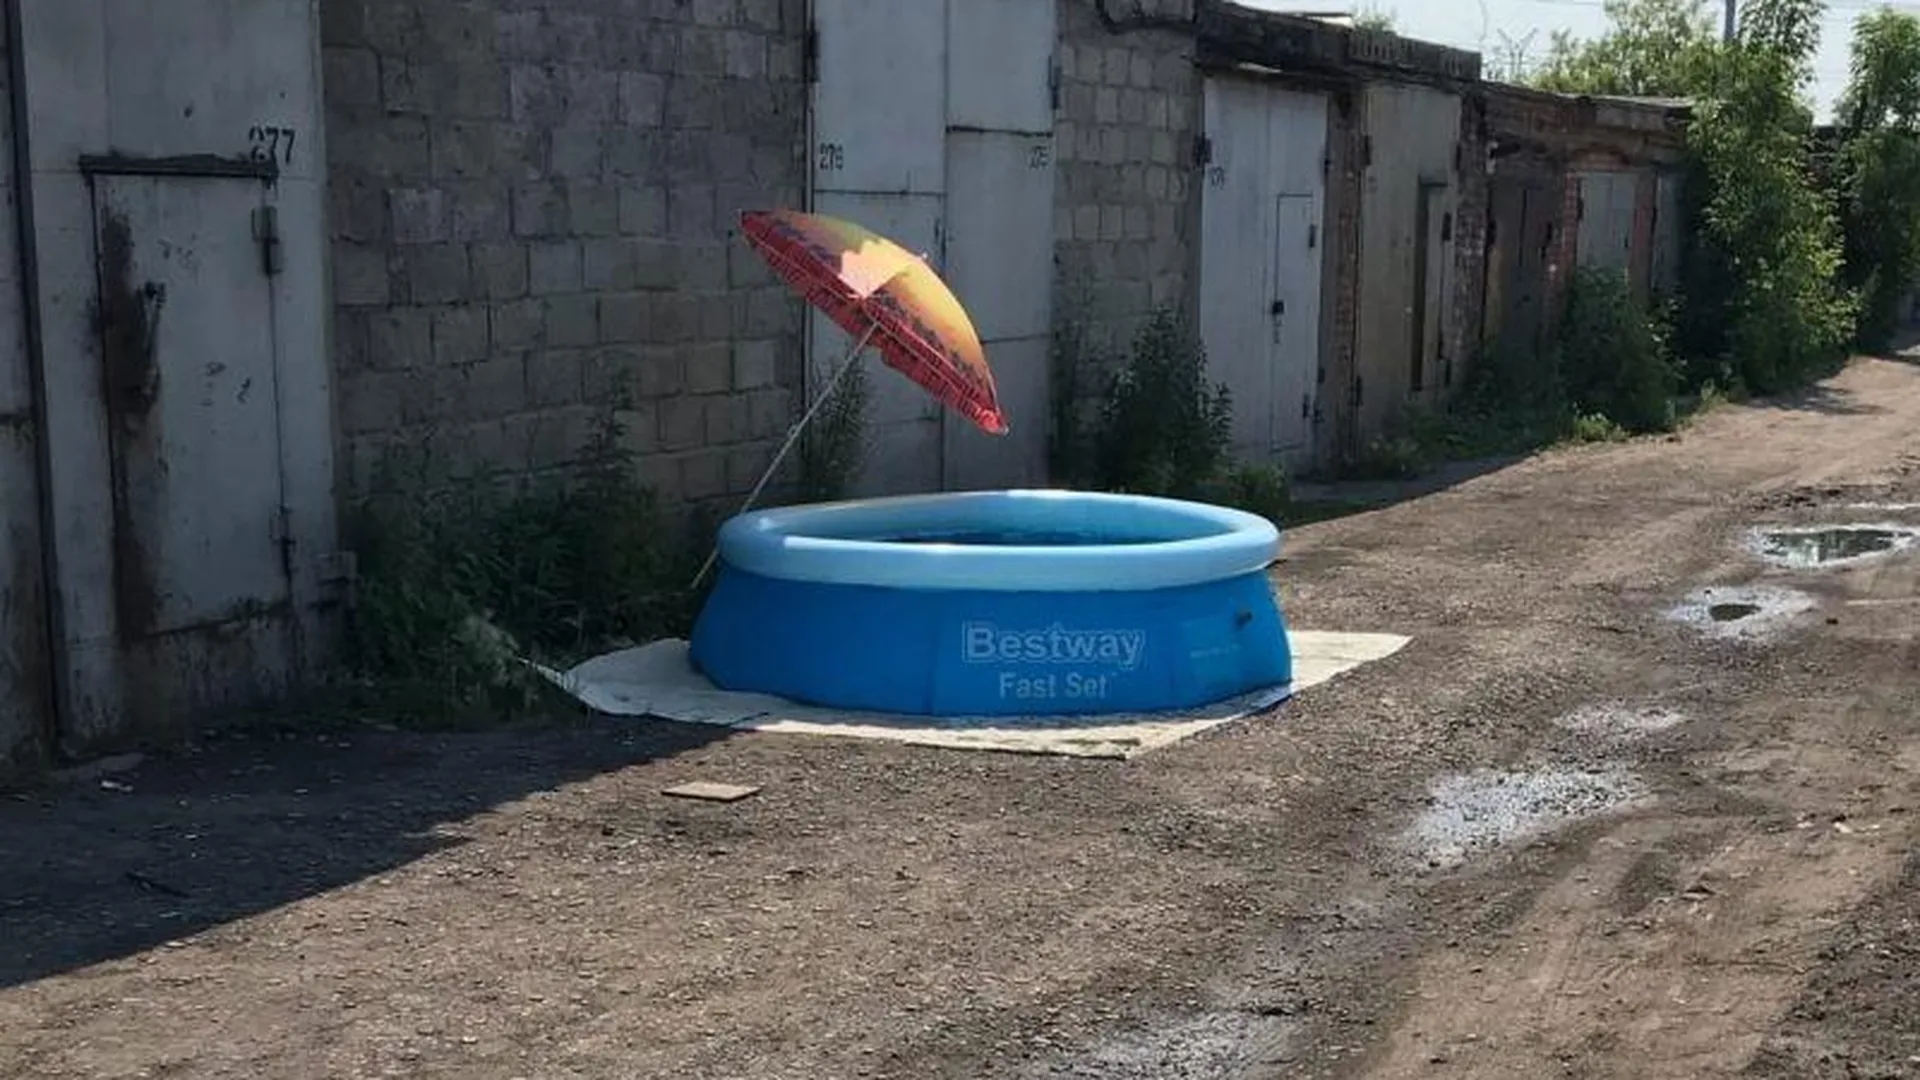 Курорт на задворках: умельцы из Орехово-Зуево установили надувной бассейн среди гаражей